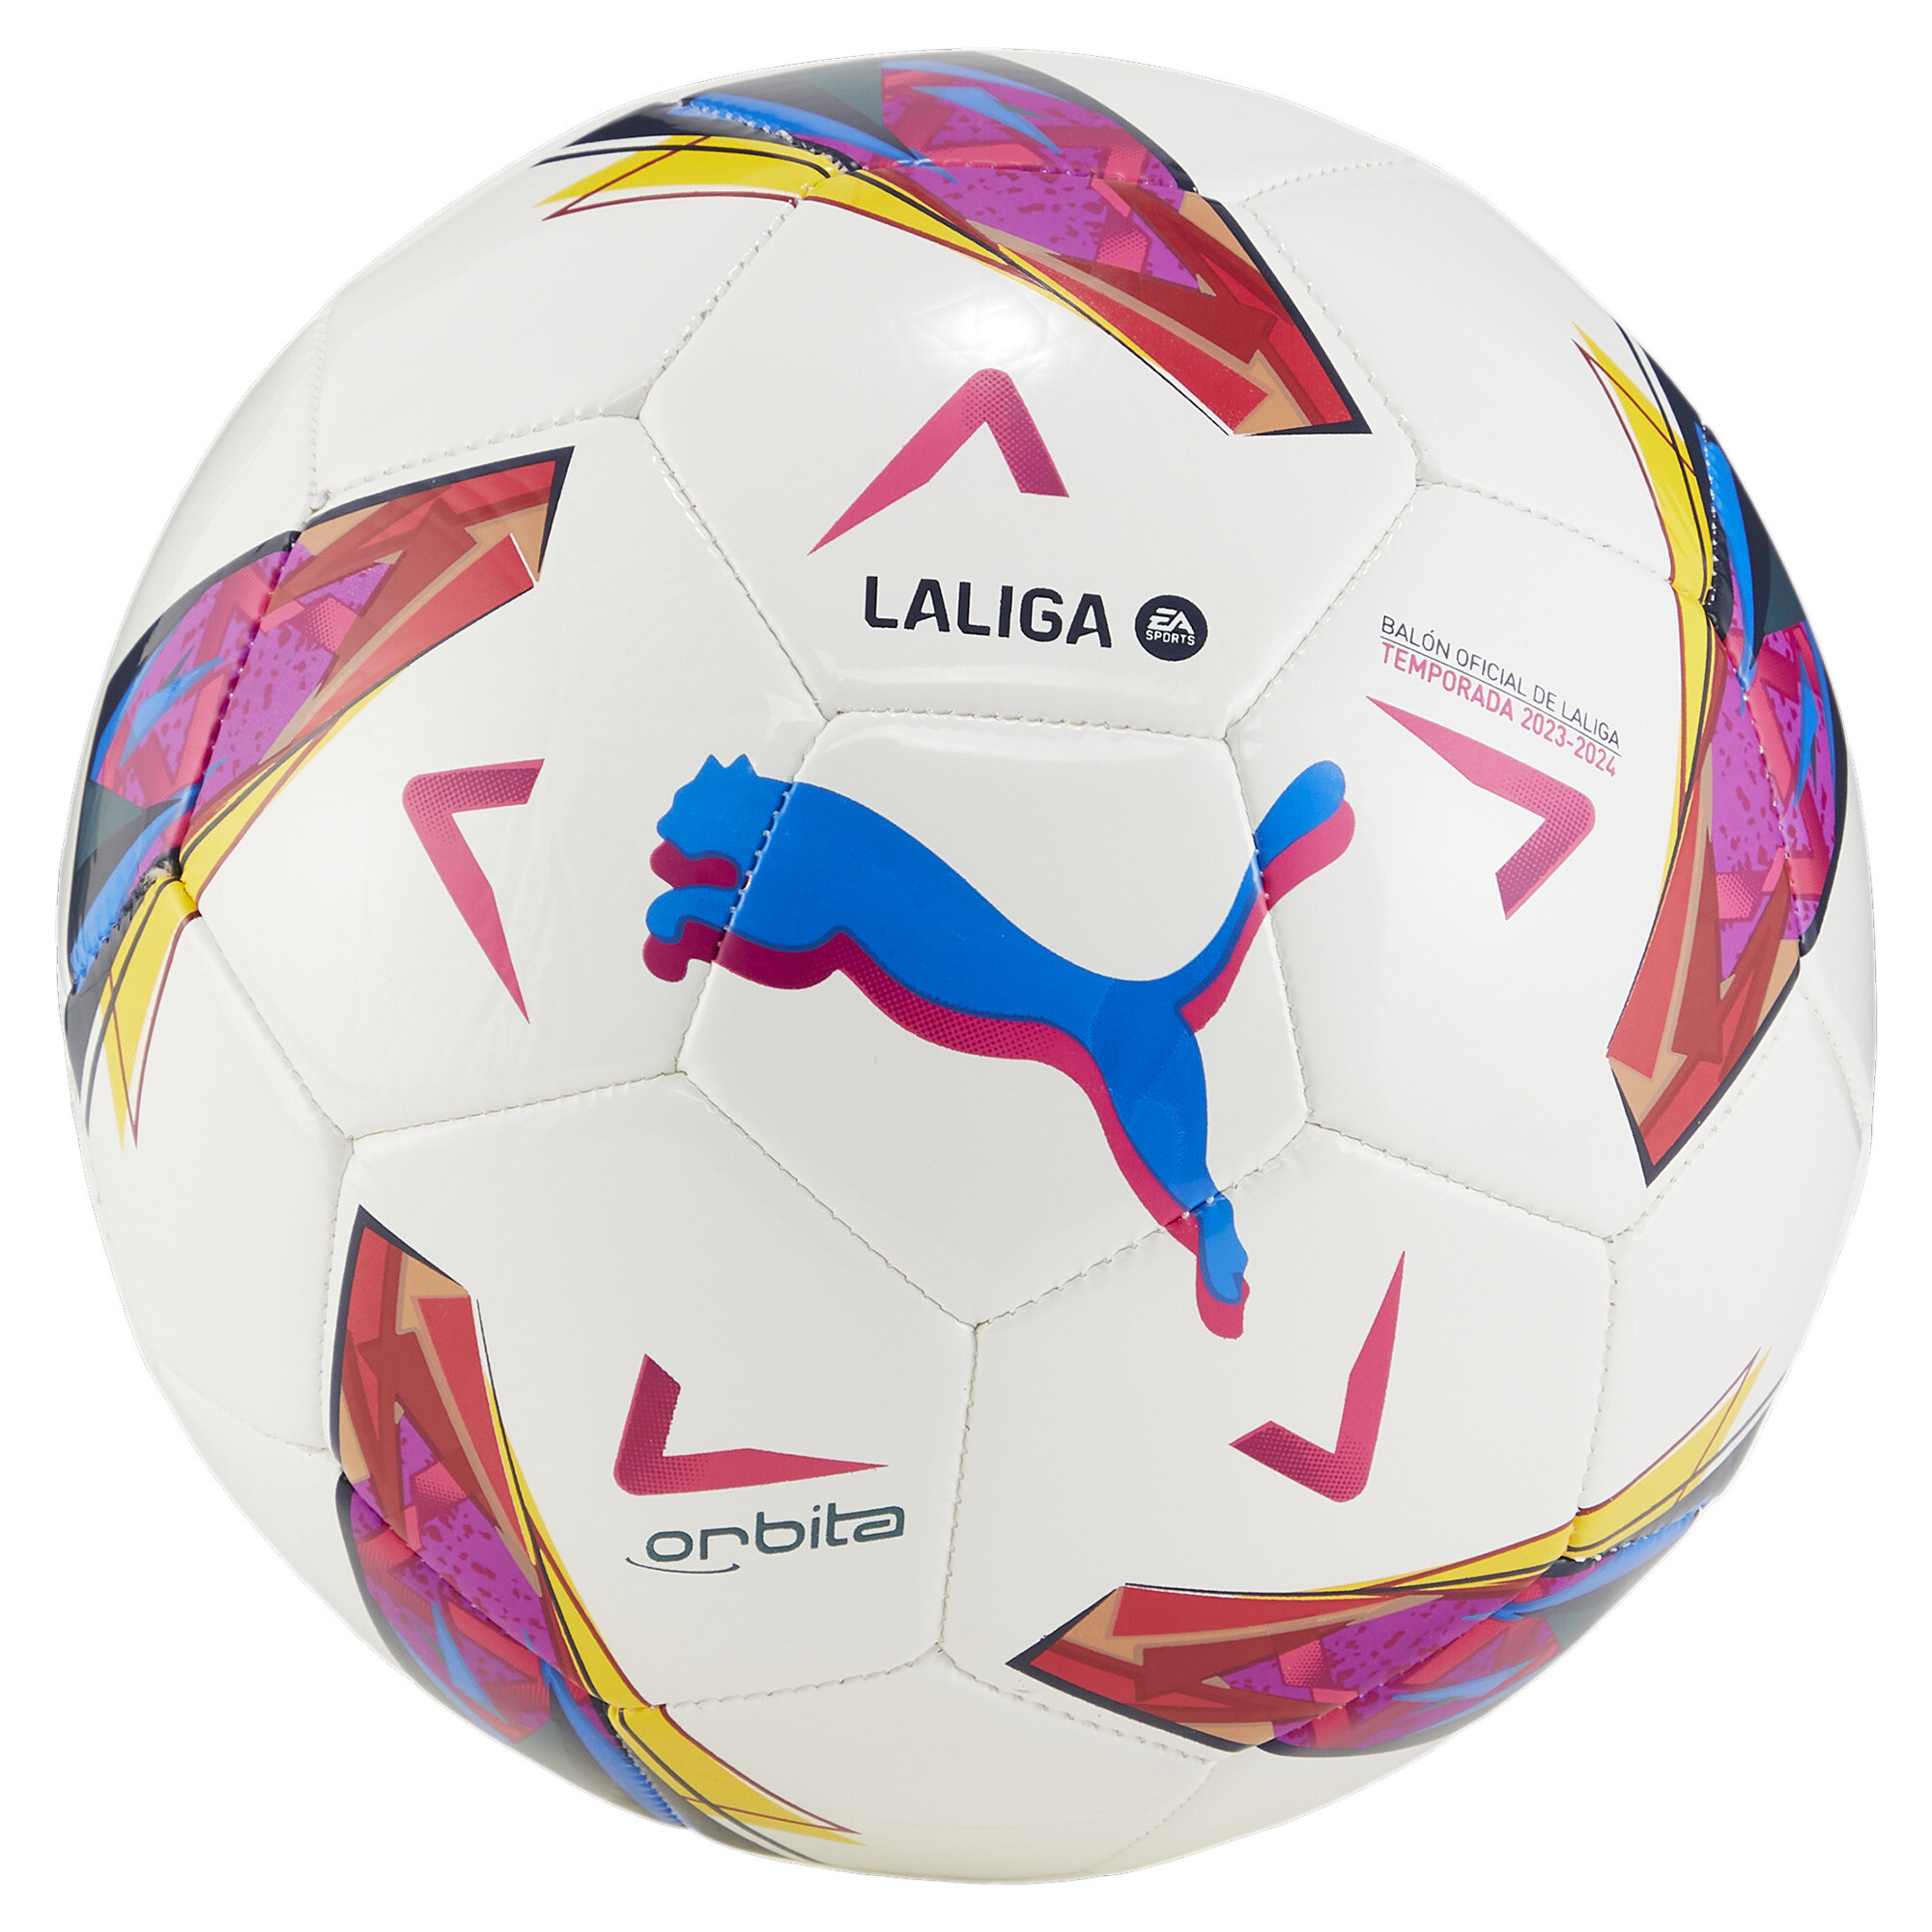 Puma Orbita La Liga 1 Replica Training Football, White, Size 3, Accessories